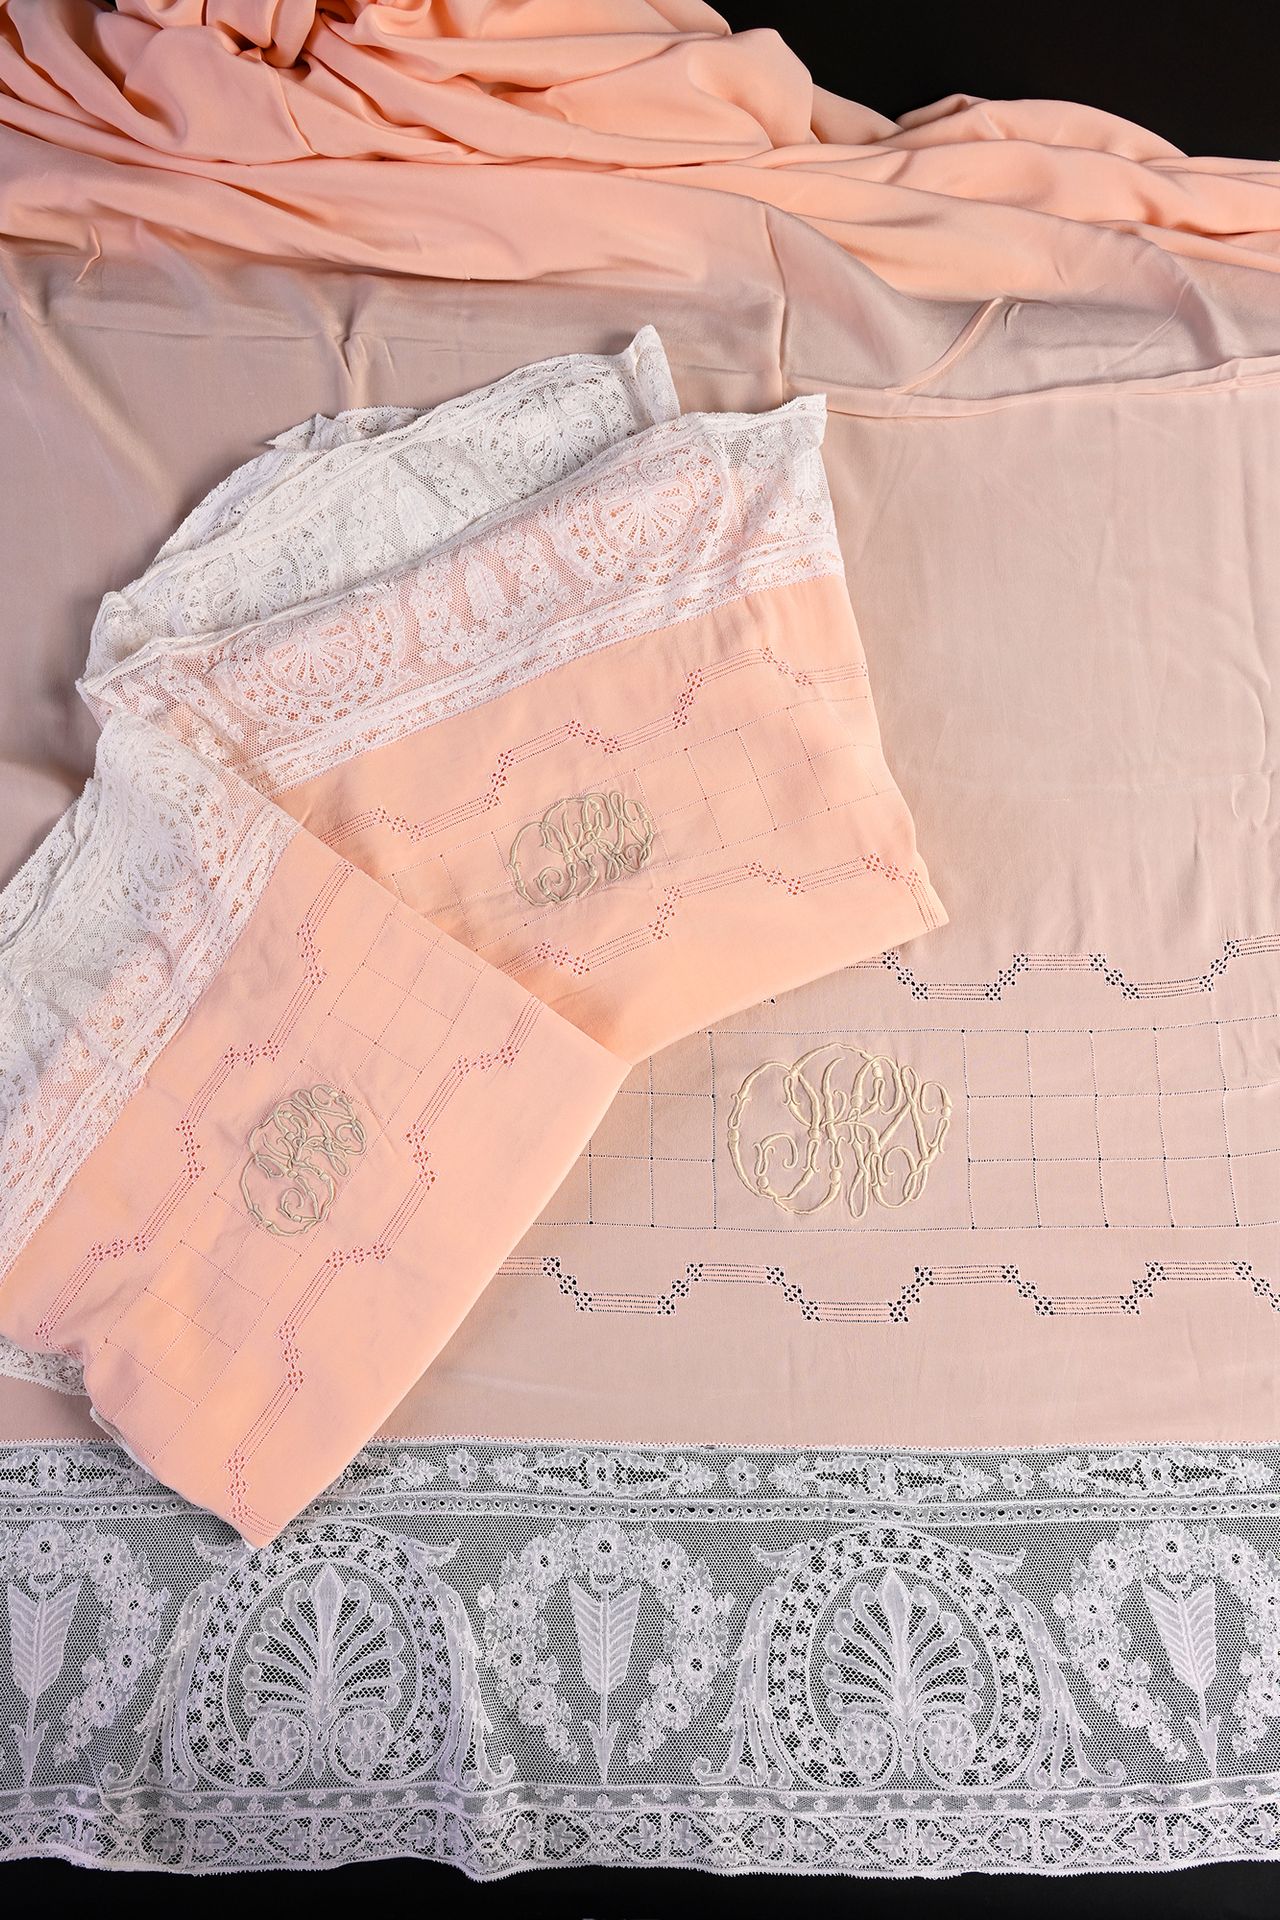 Null 丝绸和蕾丝床品套装，床单和枕套，20世纪初。
这套完整的杏色丝绸床品包括带回纹的床单和两个配套的方形枕套以及下面的平板床单，上层床单带大回纹，绣有非常&hellip;